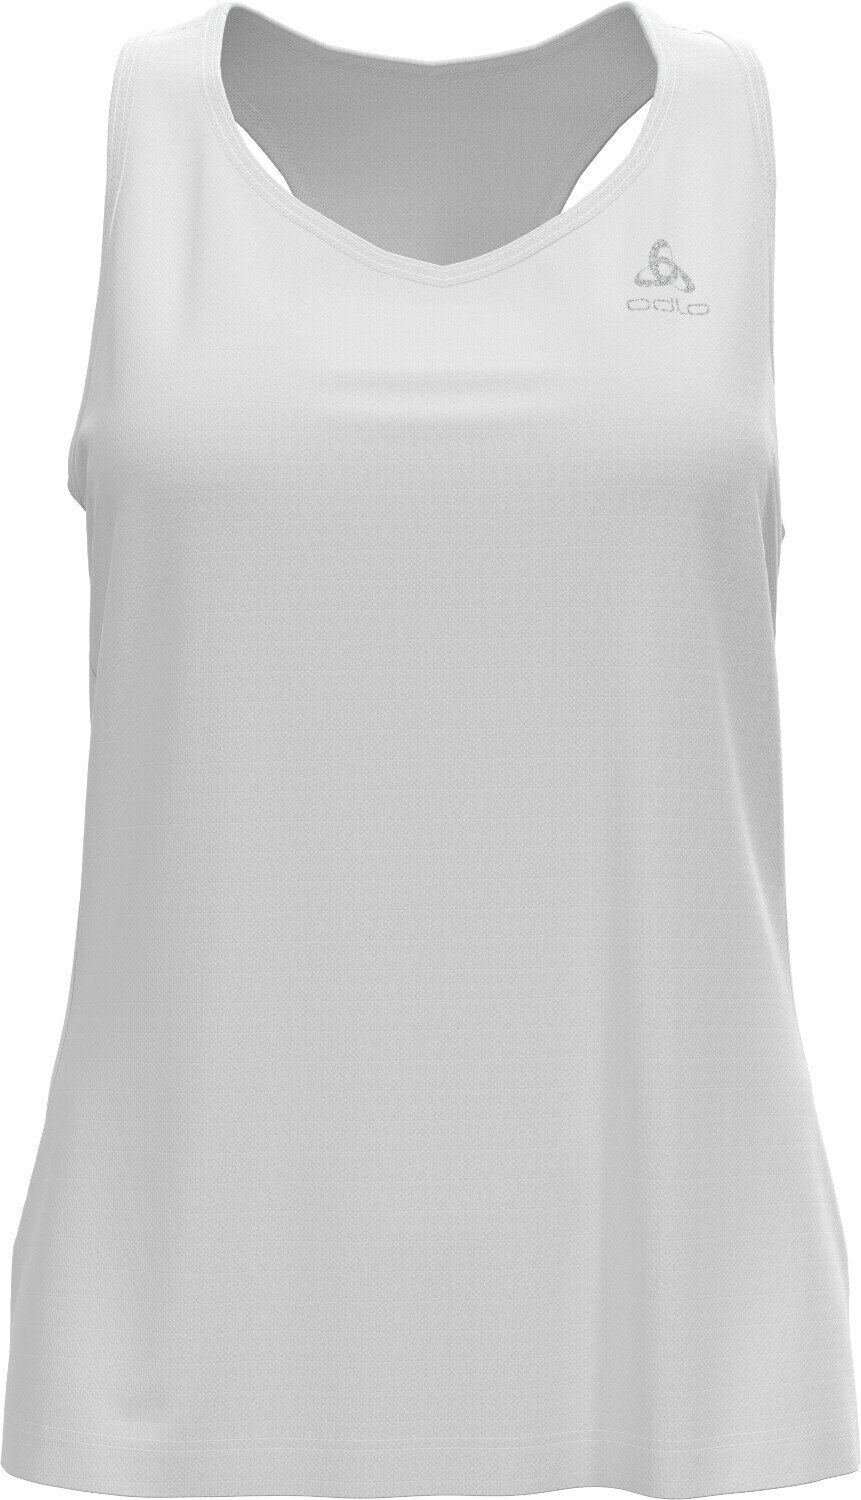 Koszulka do biegania bez rękawów
 Odlo Essential Base Layer Singlet White S Koszulka do biegania bez rękawów